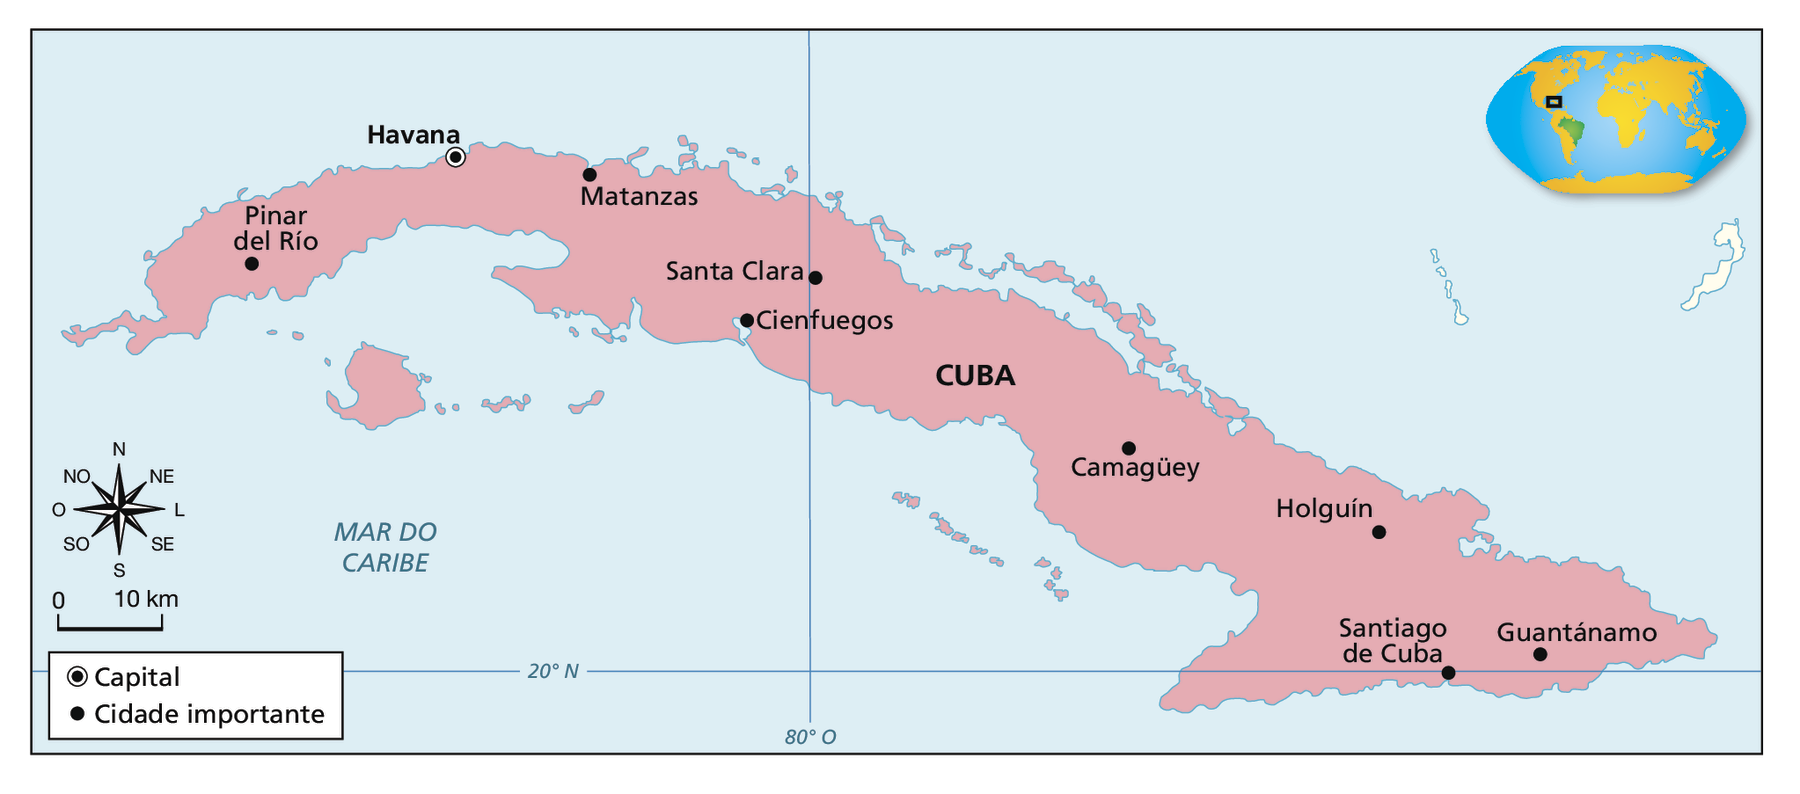 Mapa. Cuba: centros urbanos atuais. Território de Cuba, ilha no mar do Caribe. Capital: Havana. Cidades importantes: Pinar del Río, Matanzas, Santa Clara, Cienfuegos, Camagüey, Holguín, Santiago de Cuba e Guantánamo. No canto esquerdo, rosa dos ventos e escala de 0 a 10 quilômetros.